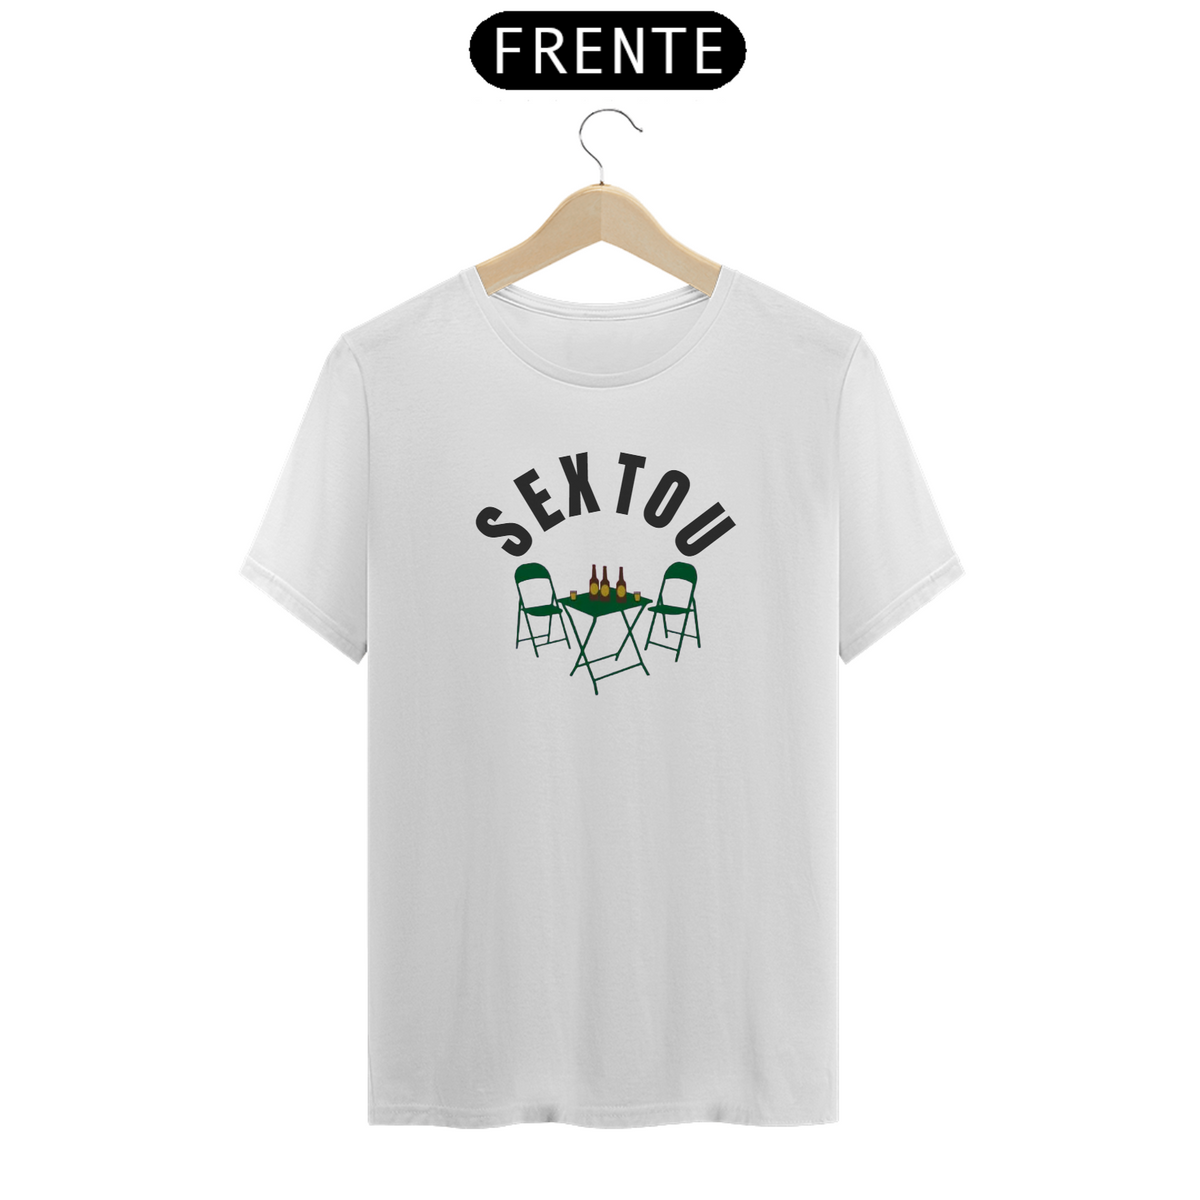 Nome do produto: Camiseta Sextou.